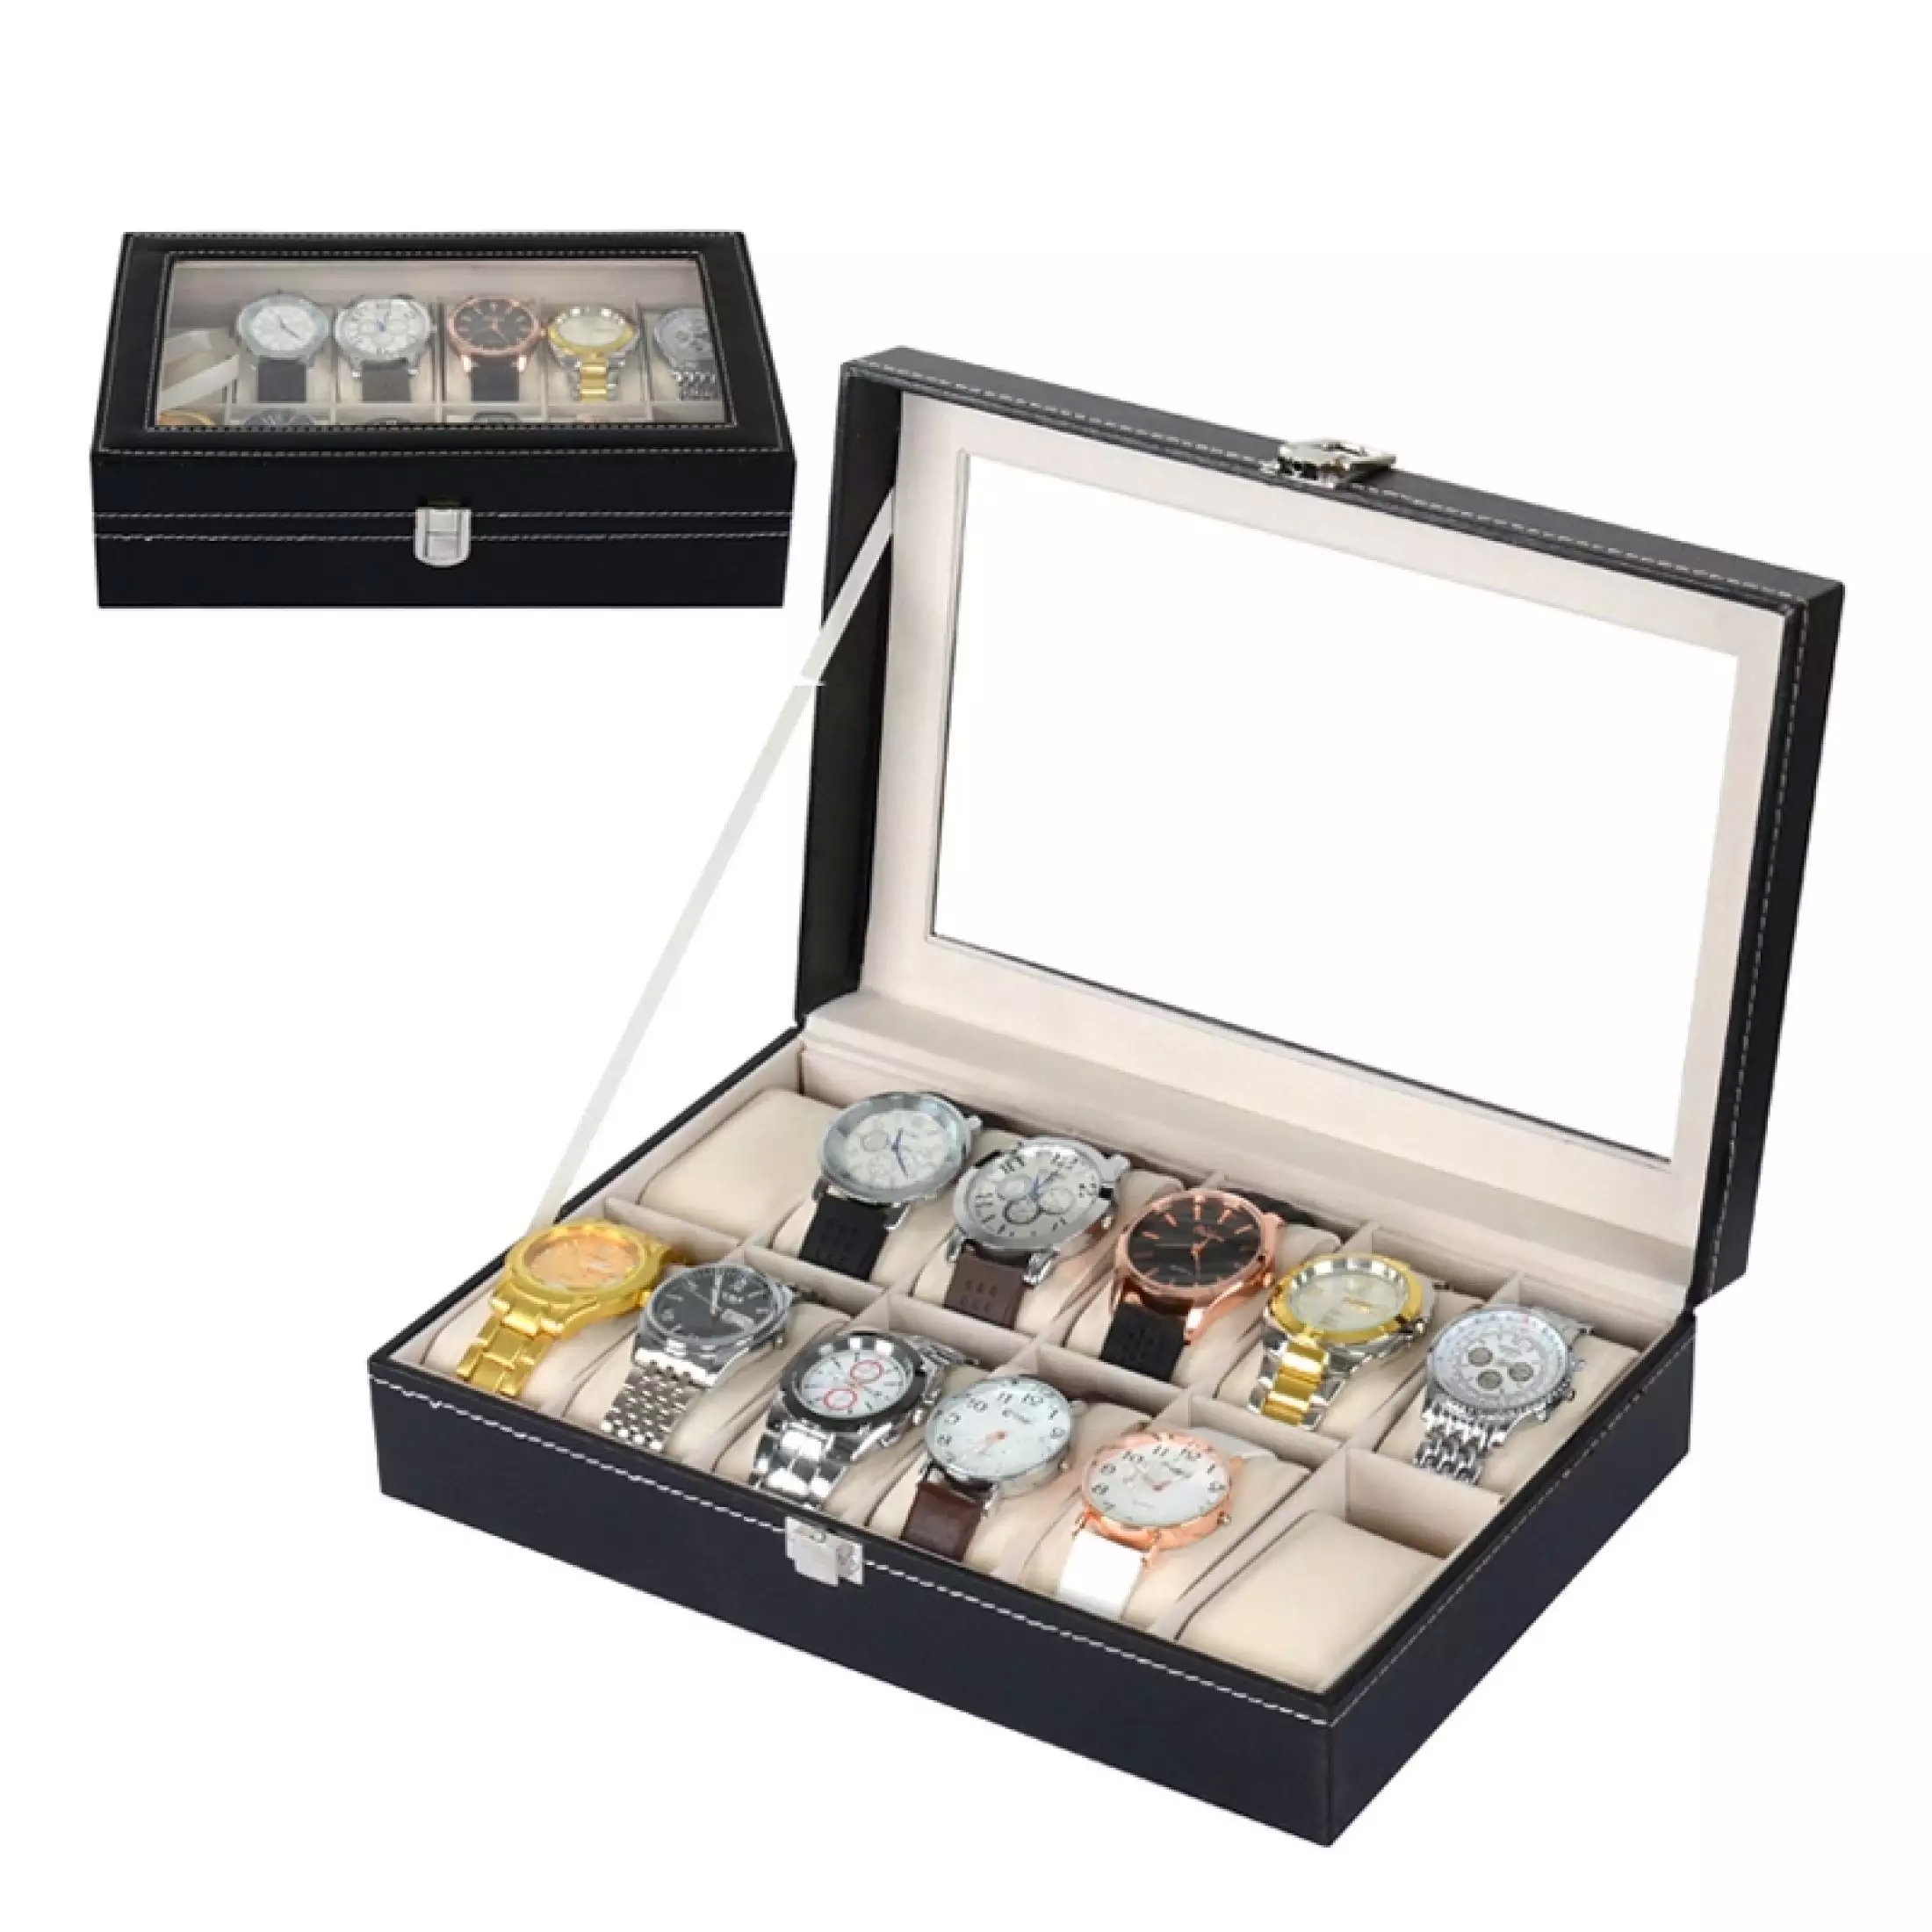 กล่องนาฬิกา กล่องเก็บนาฬิกาข้อมือ กล่องใส่นาฬิกา 3/12 เรือน ฝากระจก กล่องใส่เครื่องประดับ Leather Watch Box (Black) (BOX3) (BOX12)